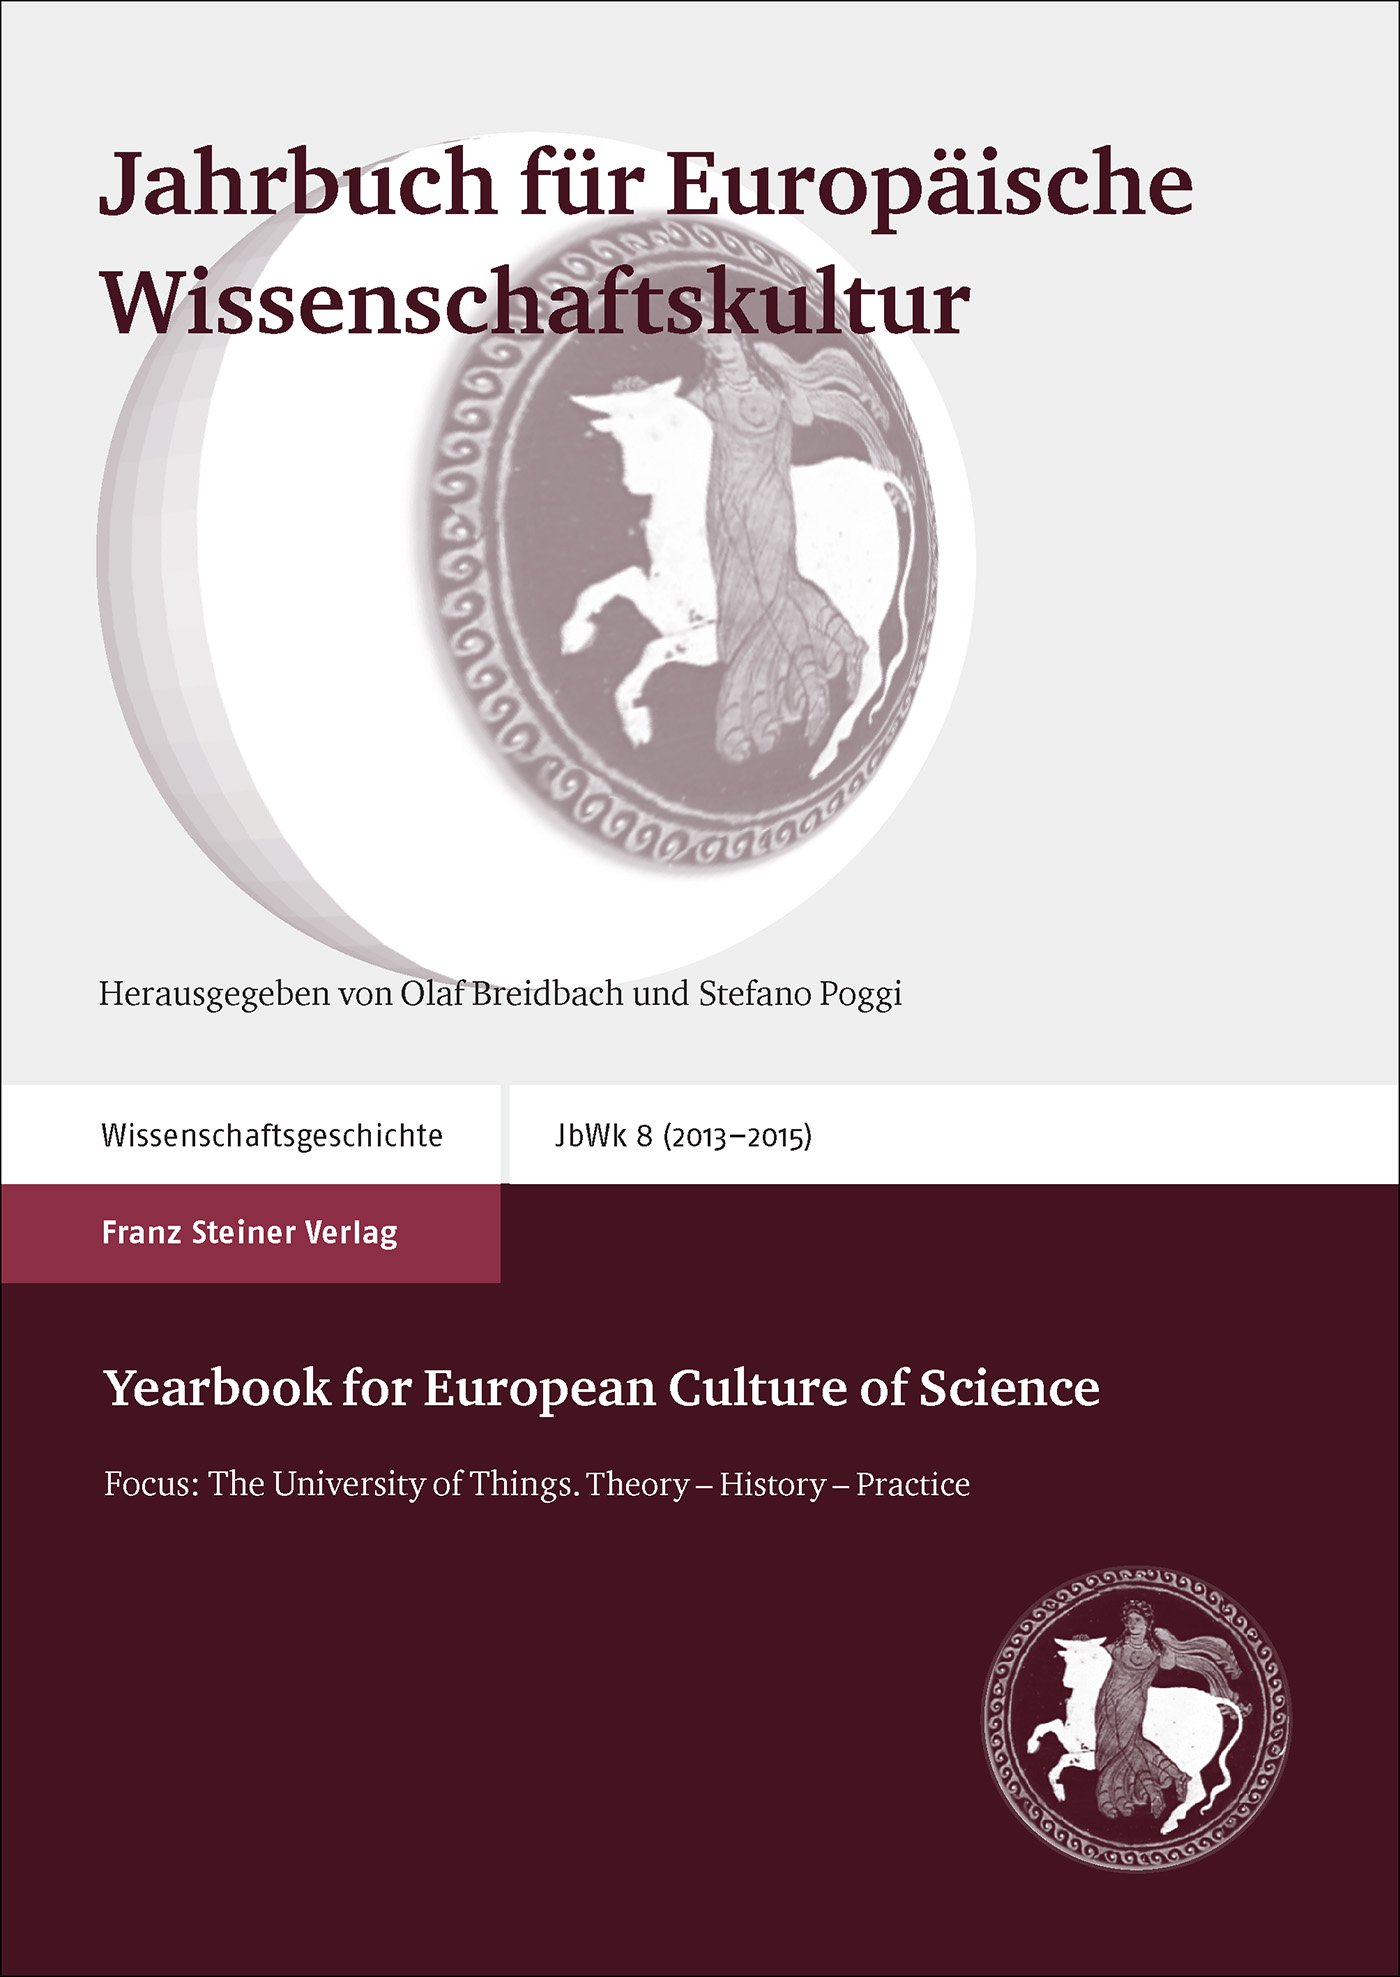 Jahrbuch für Europäische Wissenschaftskultur 8 (2013–2015) / Yearbook for European Culture of Science 8 (2013-2015)